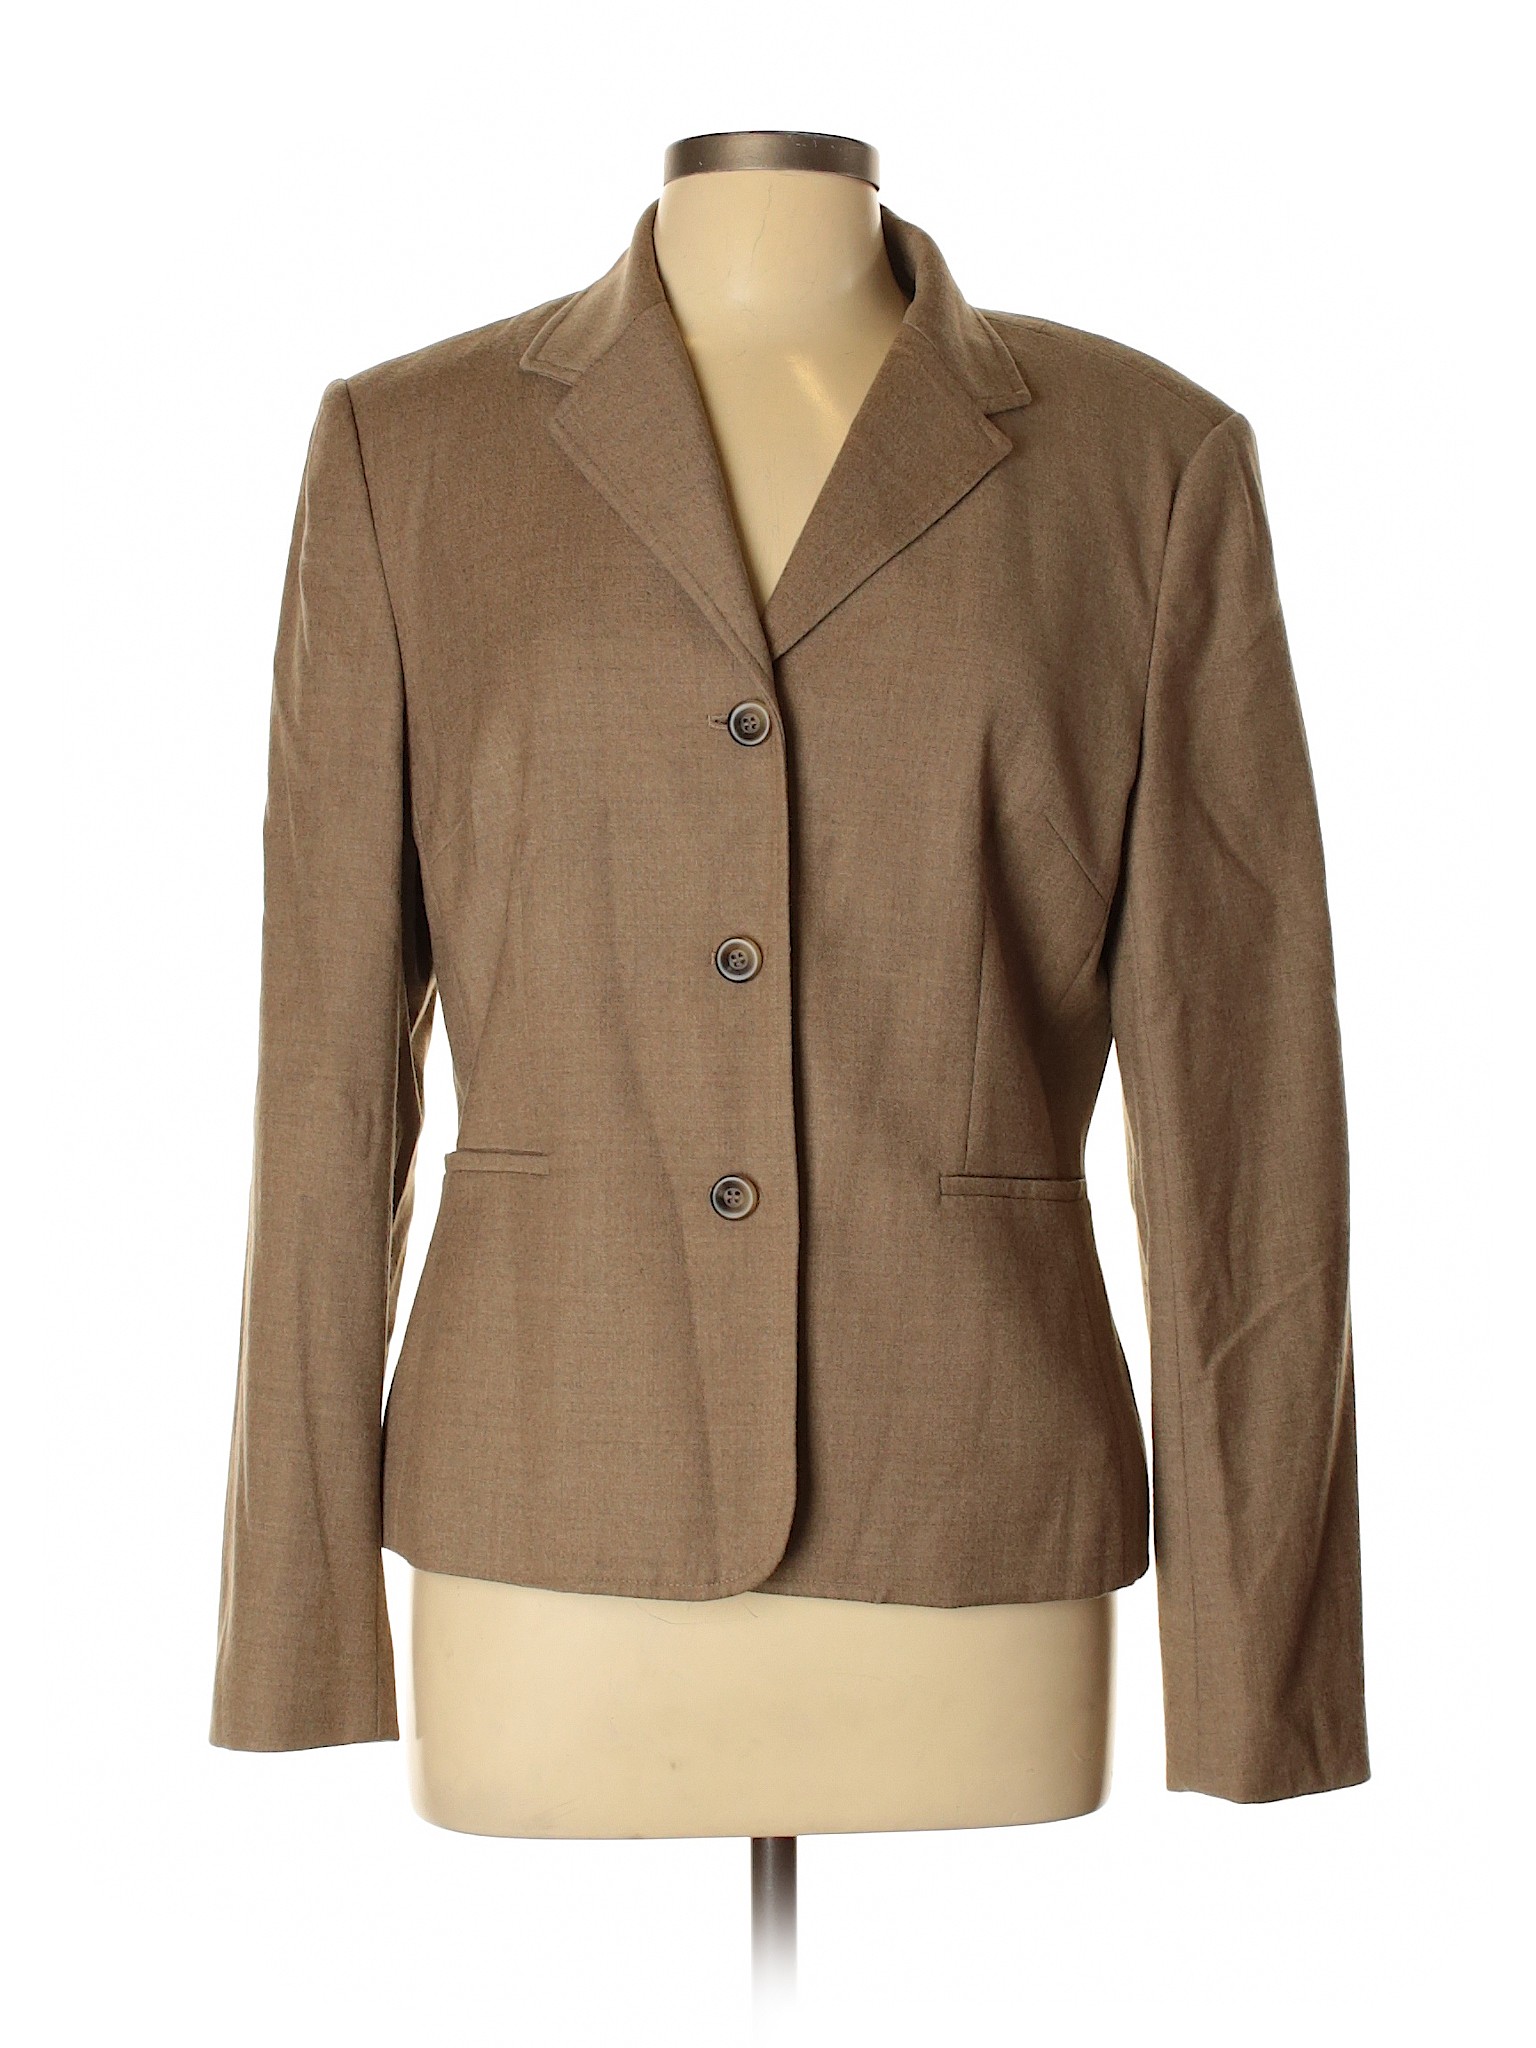 Talbots Women Brown Wool Blazer 10 | eBay